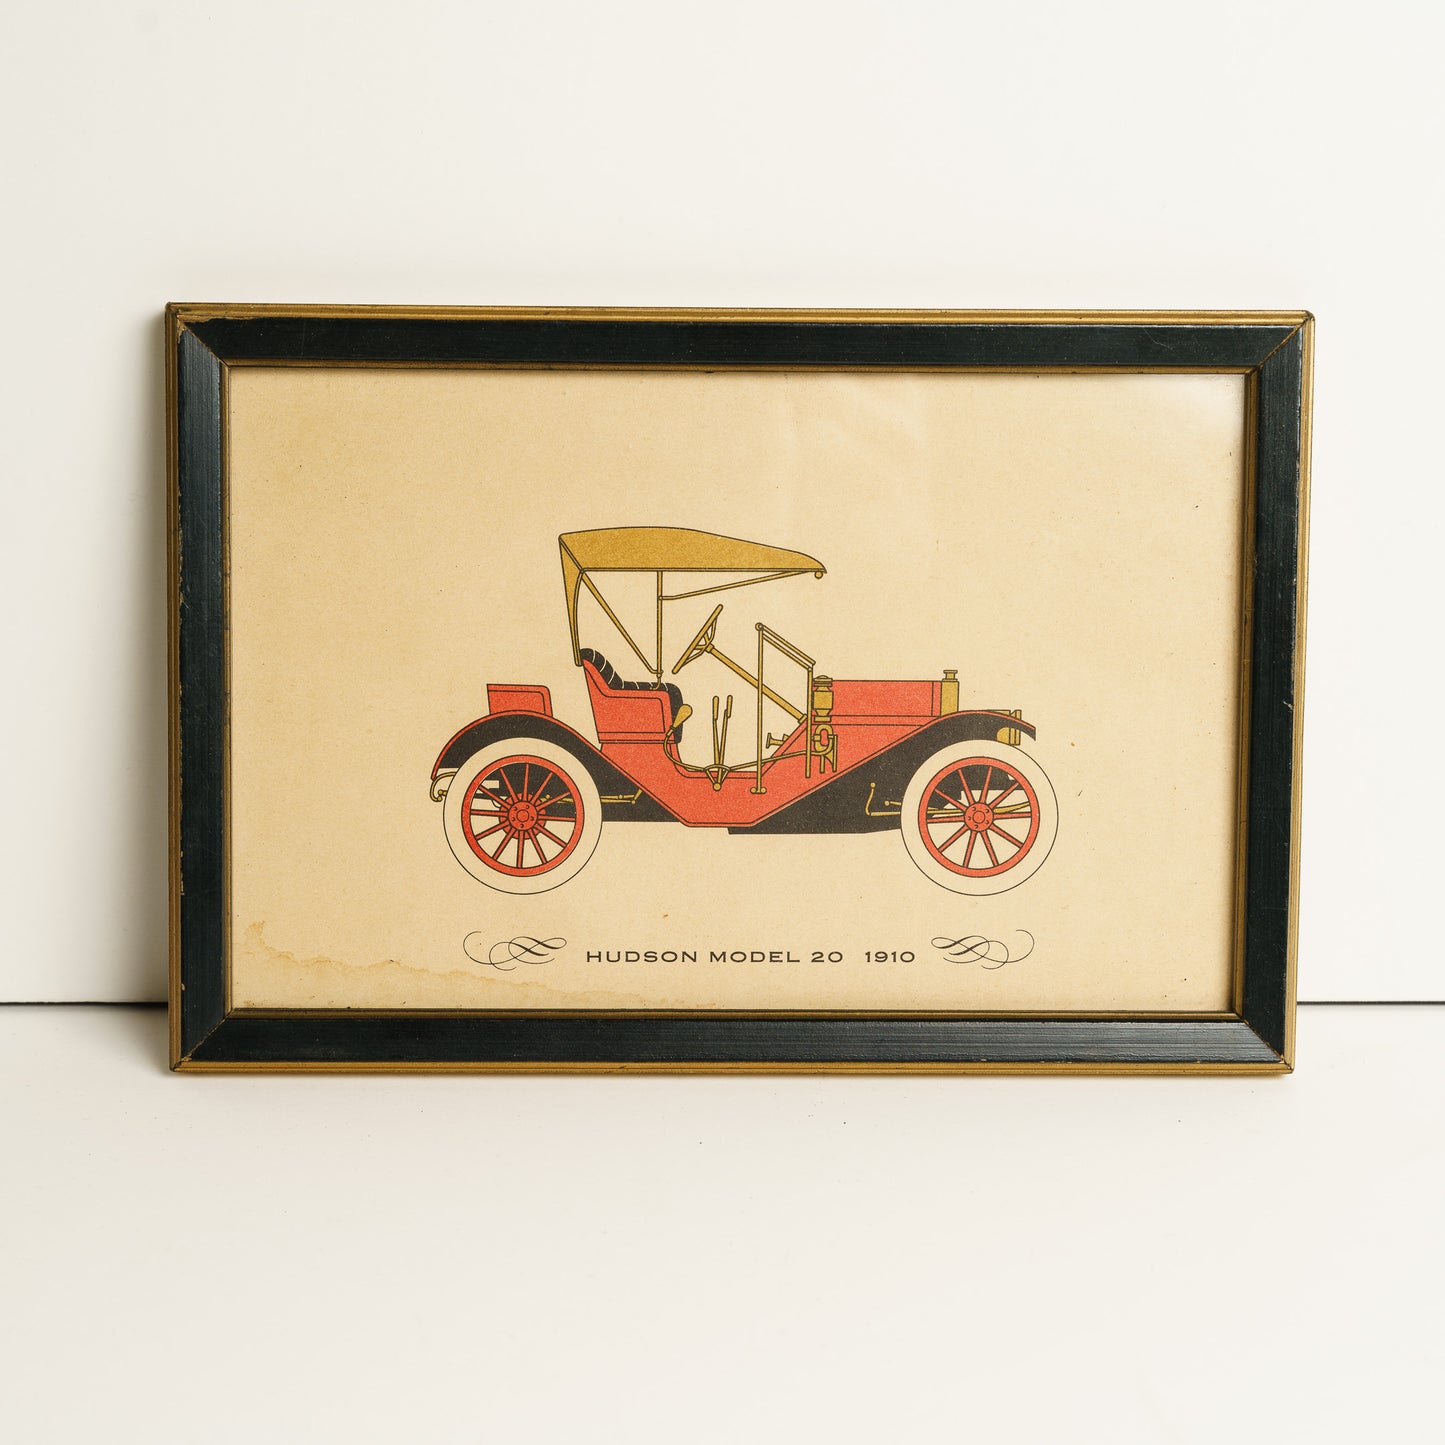 Set of 4 Framed Antique Cars